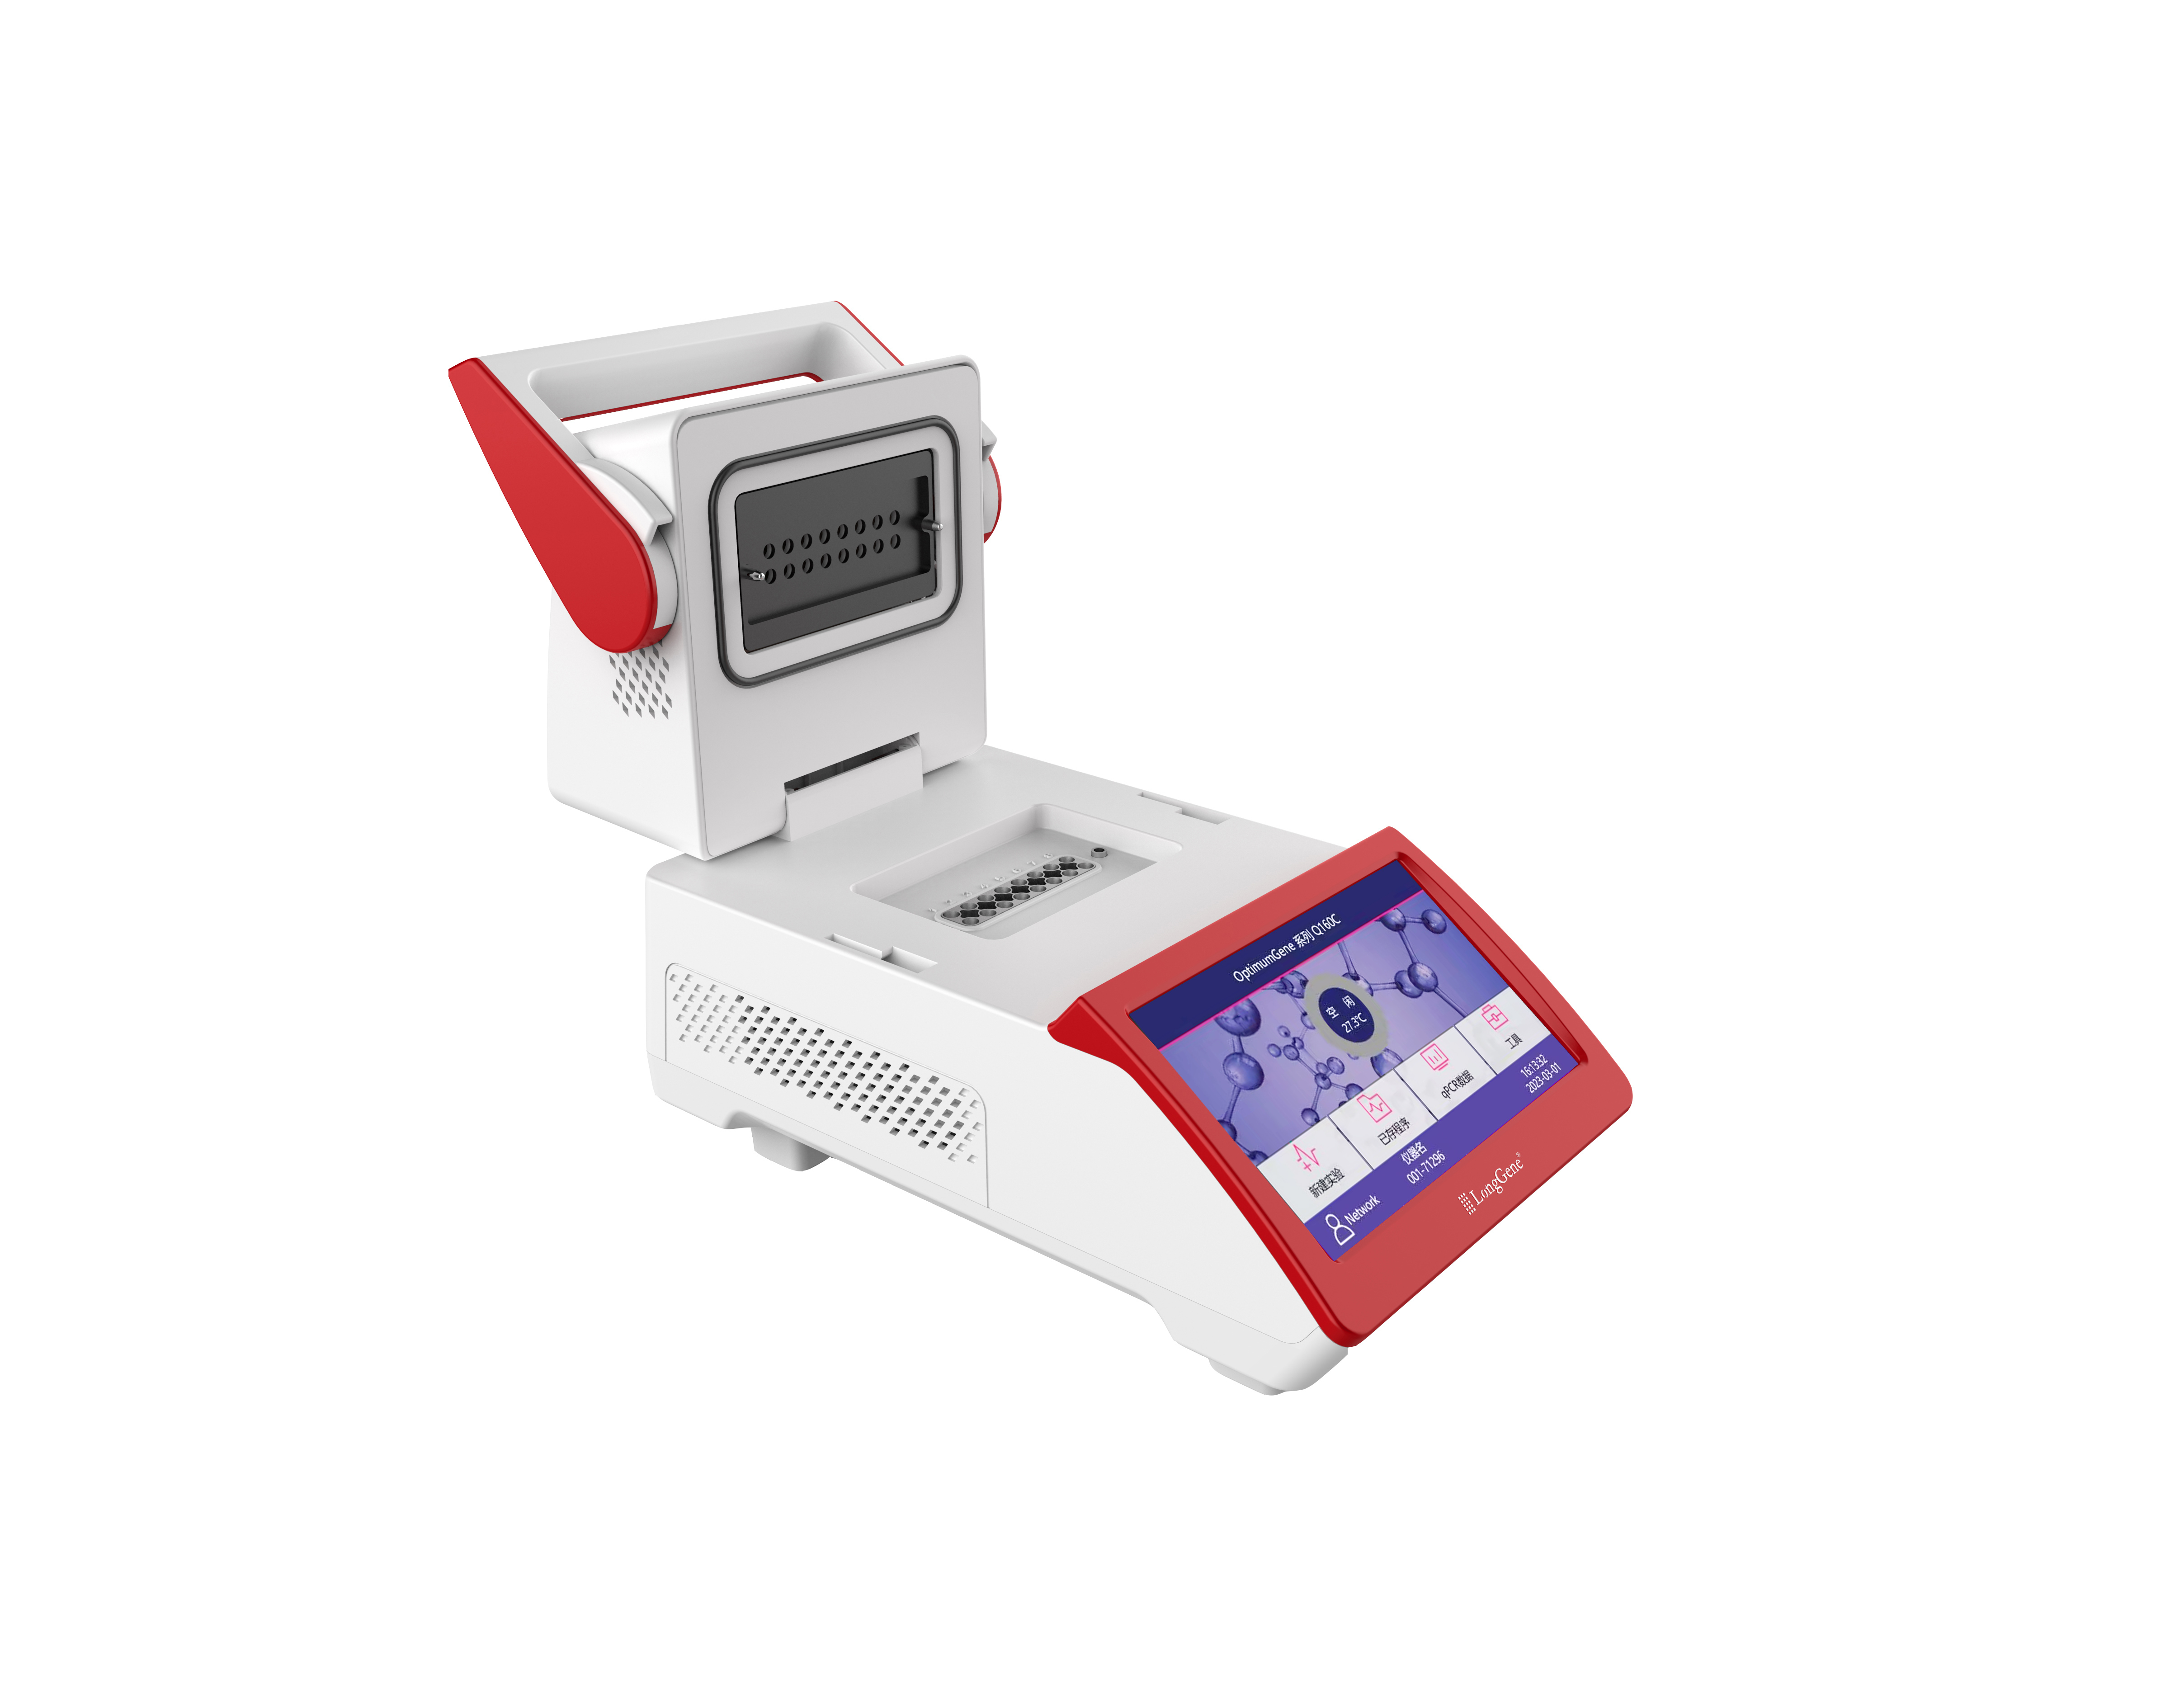 Q160型便携式荧光定量PCR系统